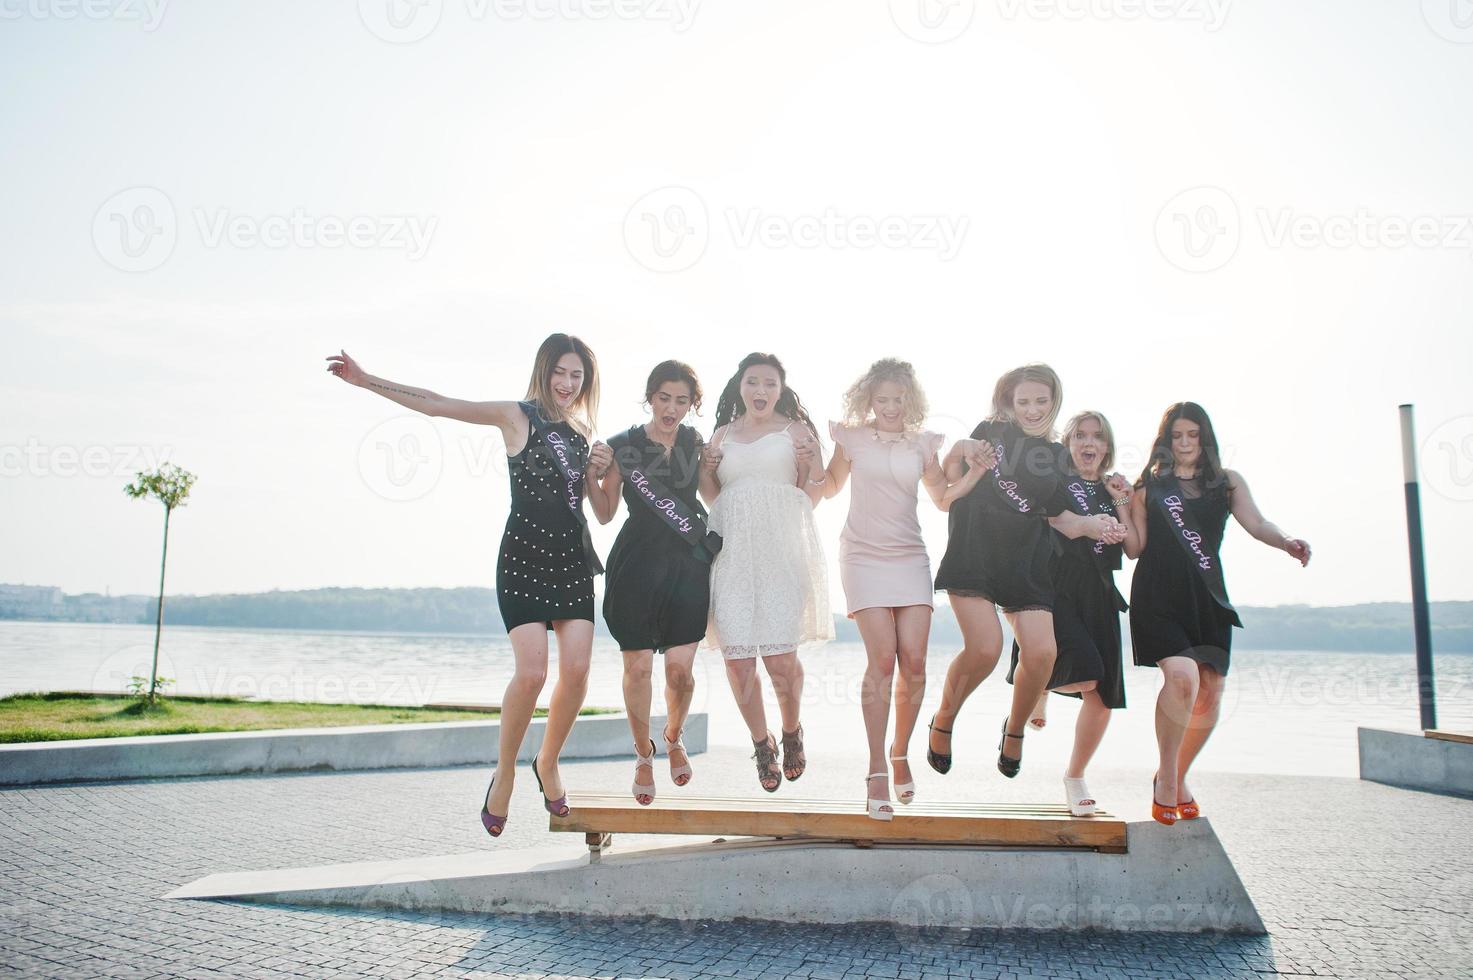 grupp på 7 flickor bär på svart och 2 brudar hoppar på möhippo. foto